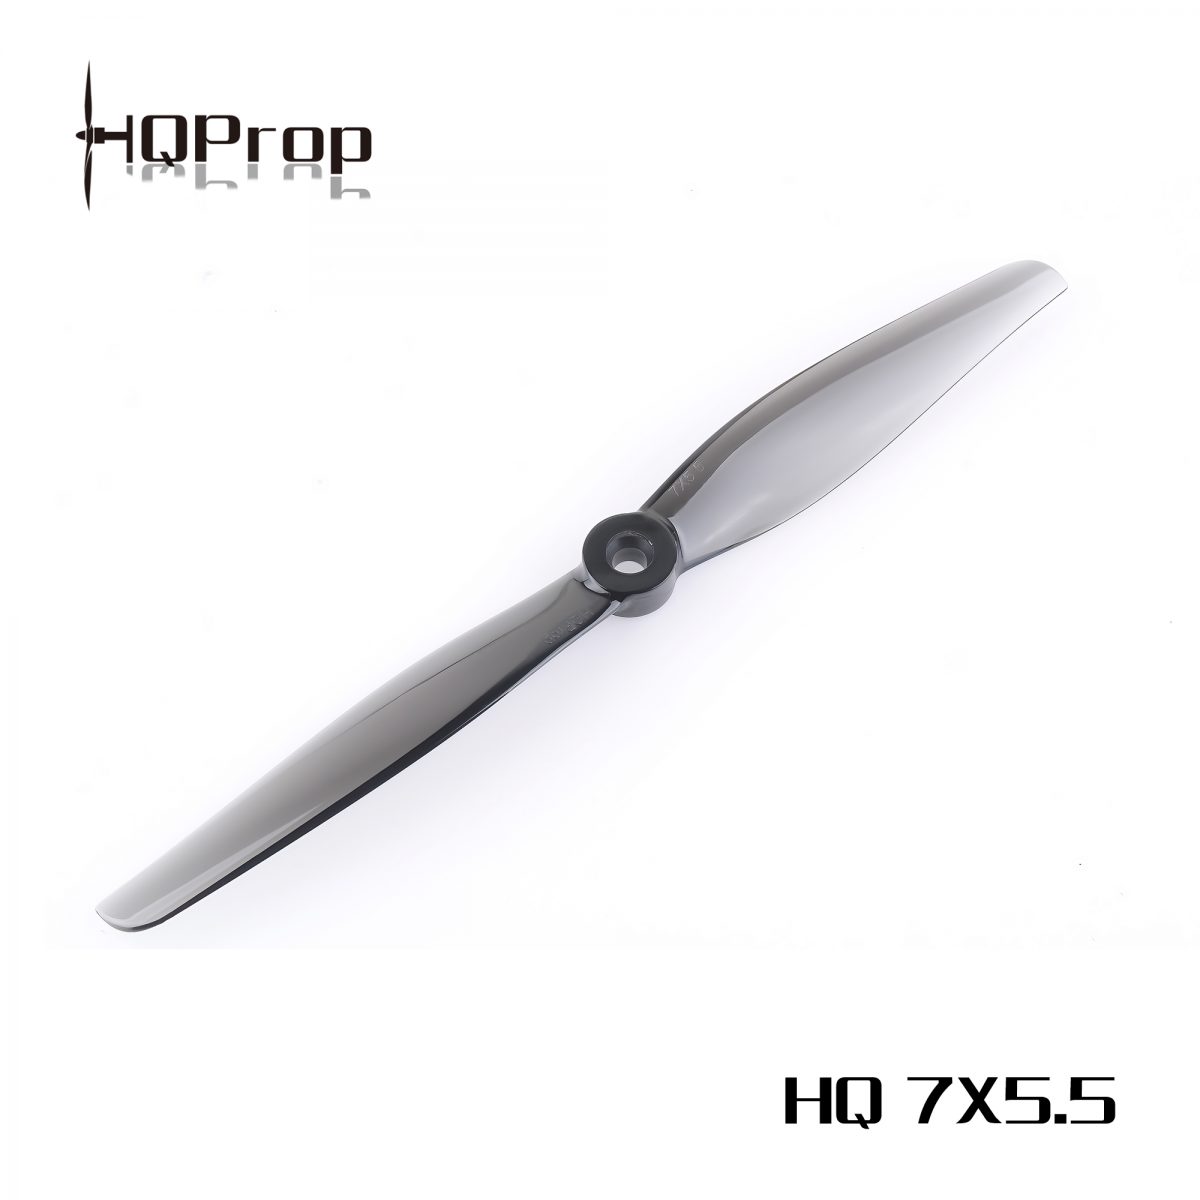 HQProp 7x5.5 Light Grey Propellers